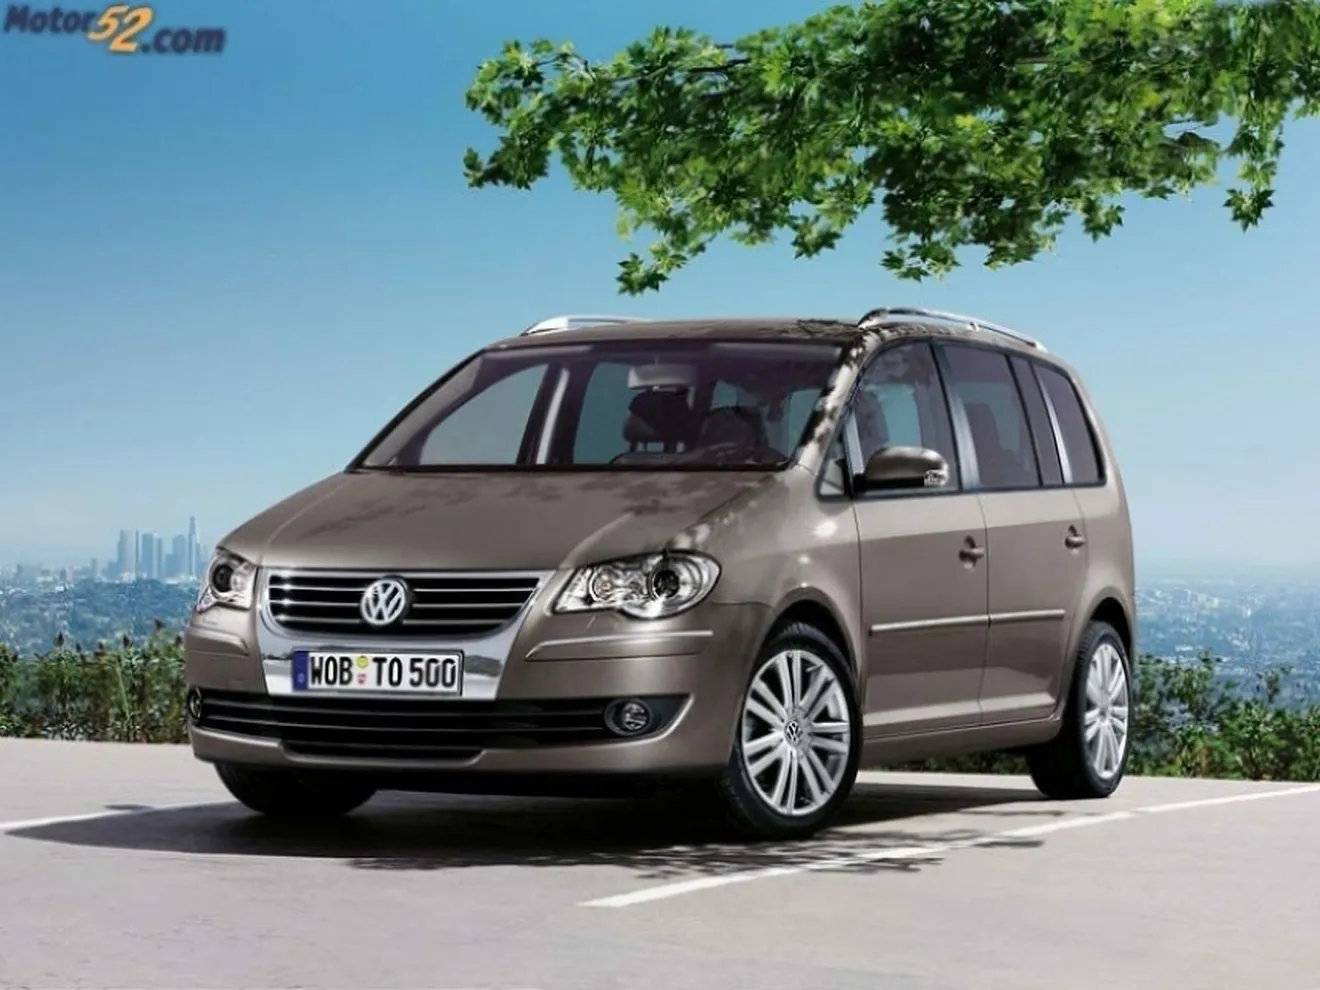 Volkswagen renueva la gama Touran